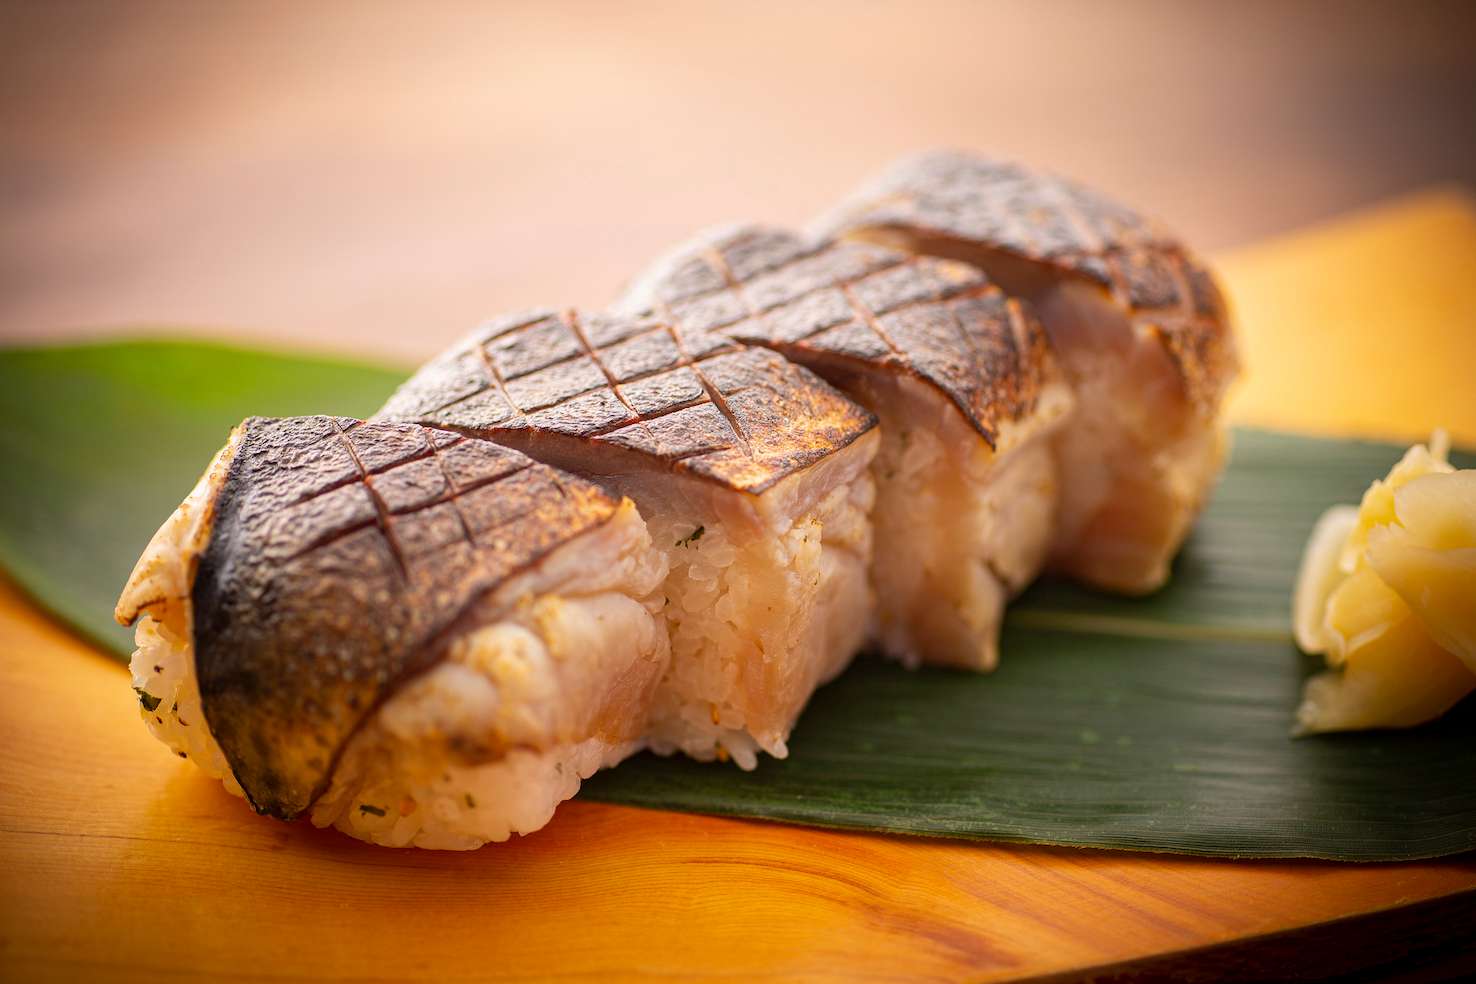 Mackerel sushi or grilled mackerel sushi